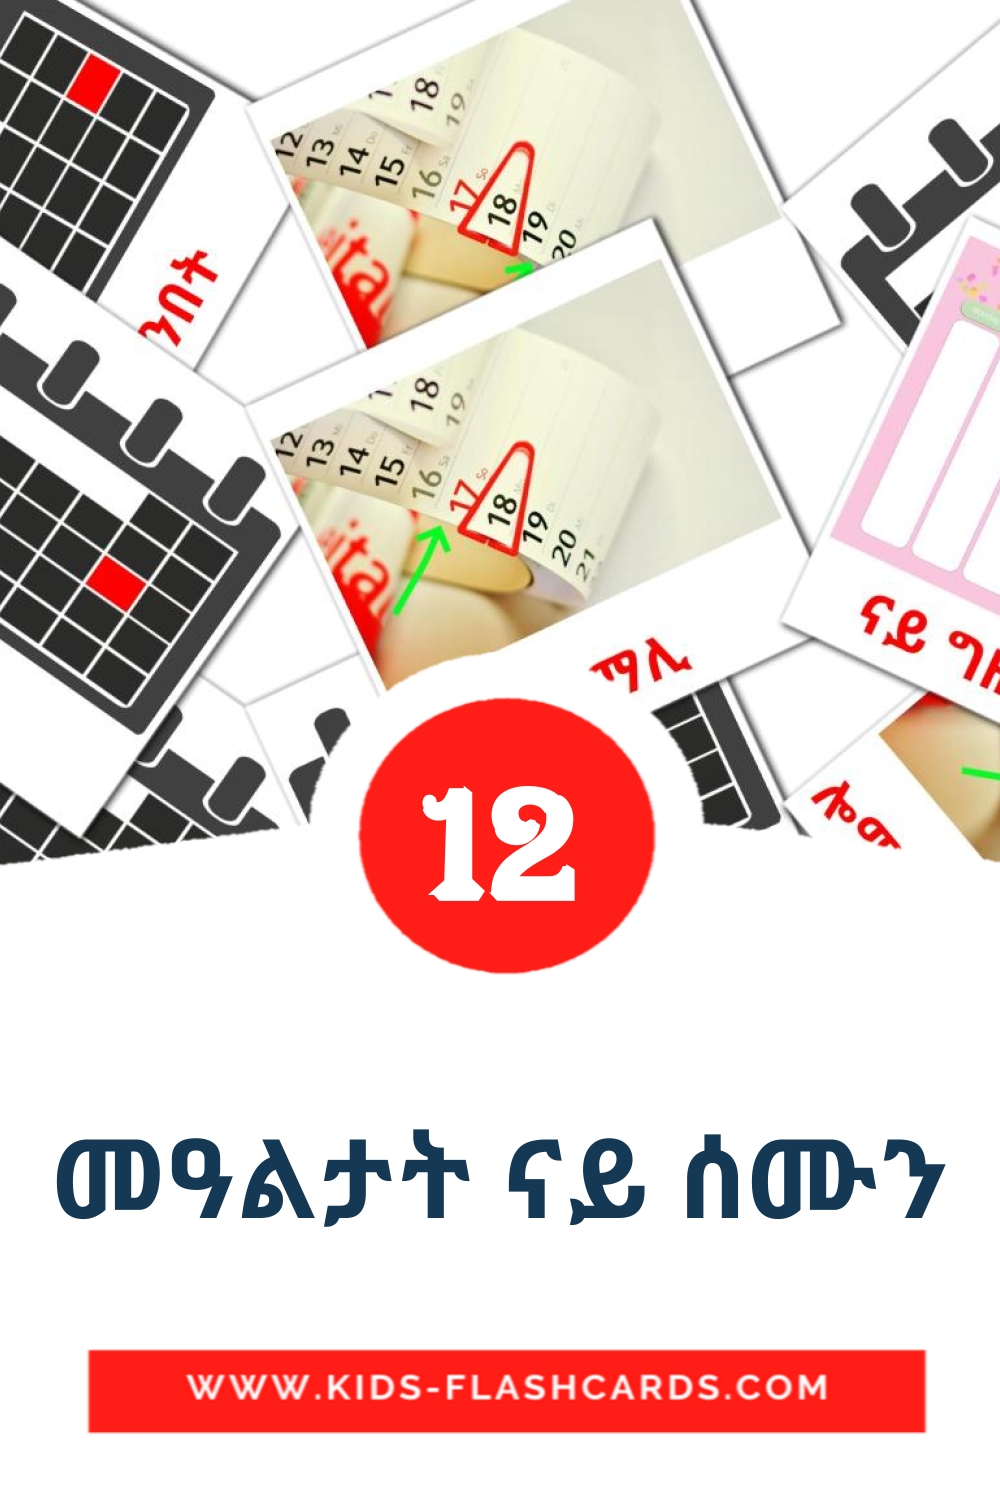 12 Cartões com Imagens de መዓልታት ናይ ሰሙን para Jardim de Infância em tigrigna(eritreia)